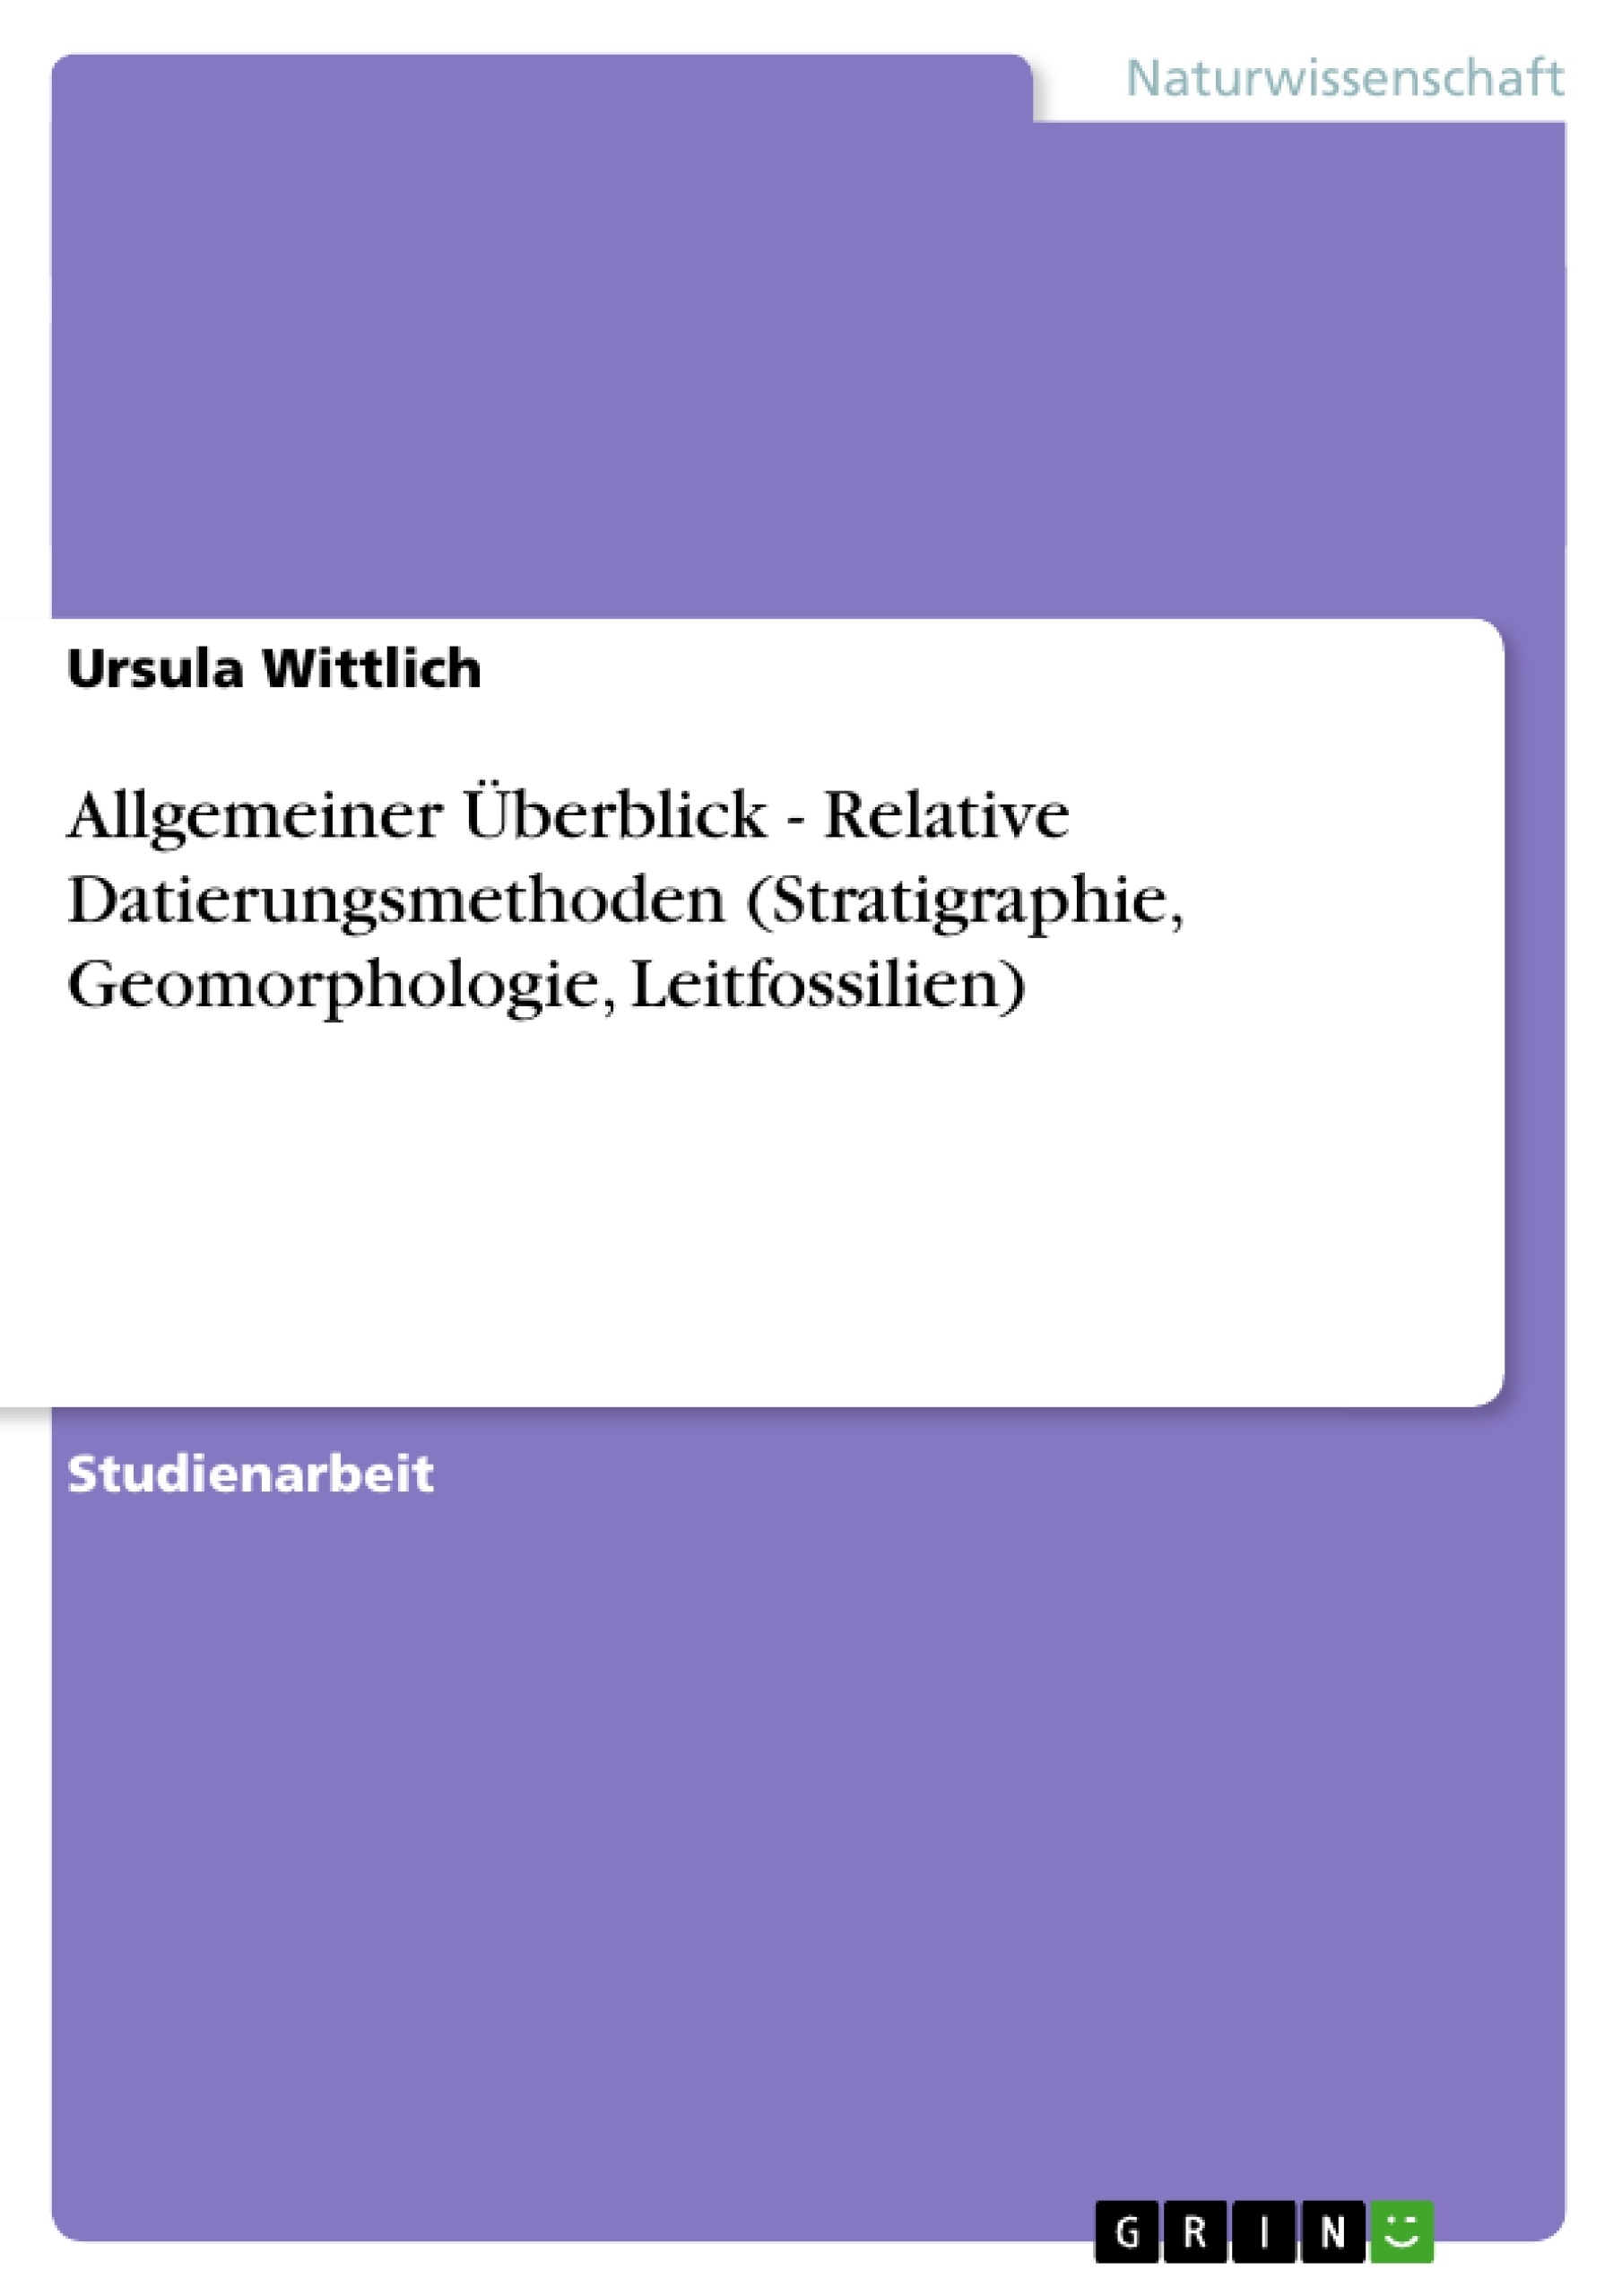 Title: Allgemeiner Überblick - Relative Datierungsmethoden (Stratigraphie, Geomorphologie, Leitfossilien)